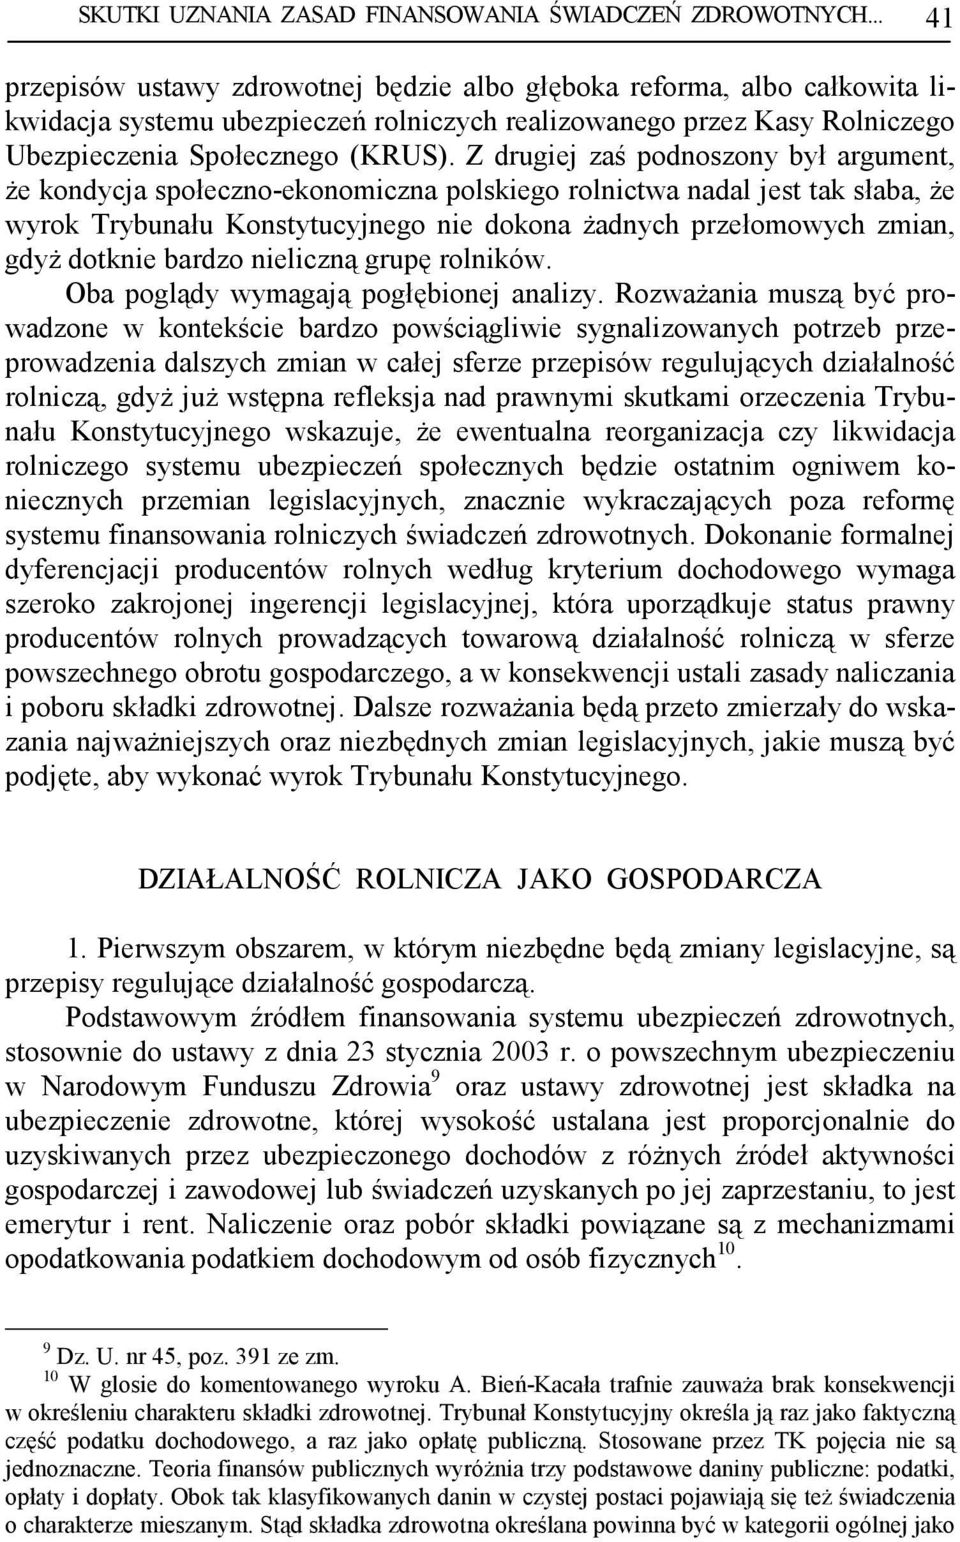 Z drugiej zaś podnoszony był argument, Ŝe kondycja społeczno-ekonomiczna polskiego rolnictwa nadal jest tak słaba, Ŝe wyrok Trybunału Konstytucyjnego nie dokona Ŝadnych przełomowych zmian, gdyŝ